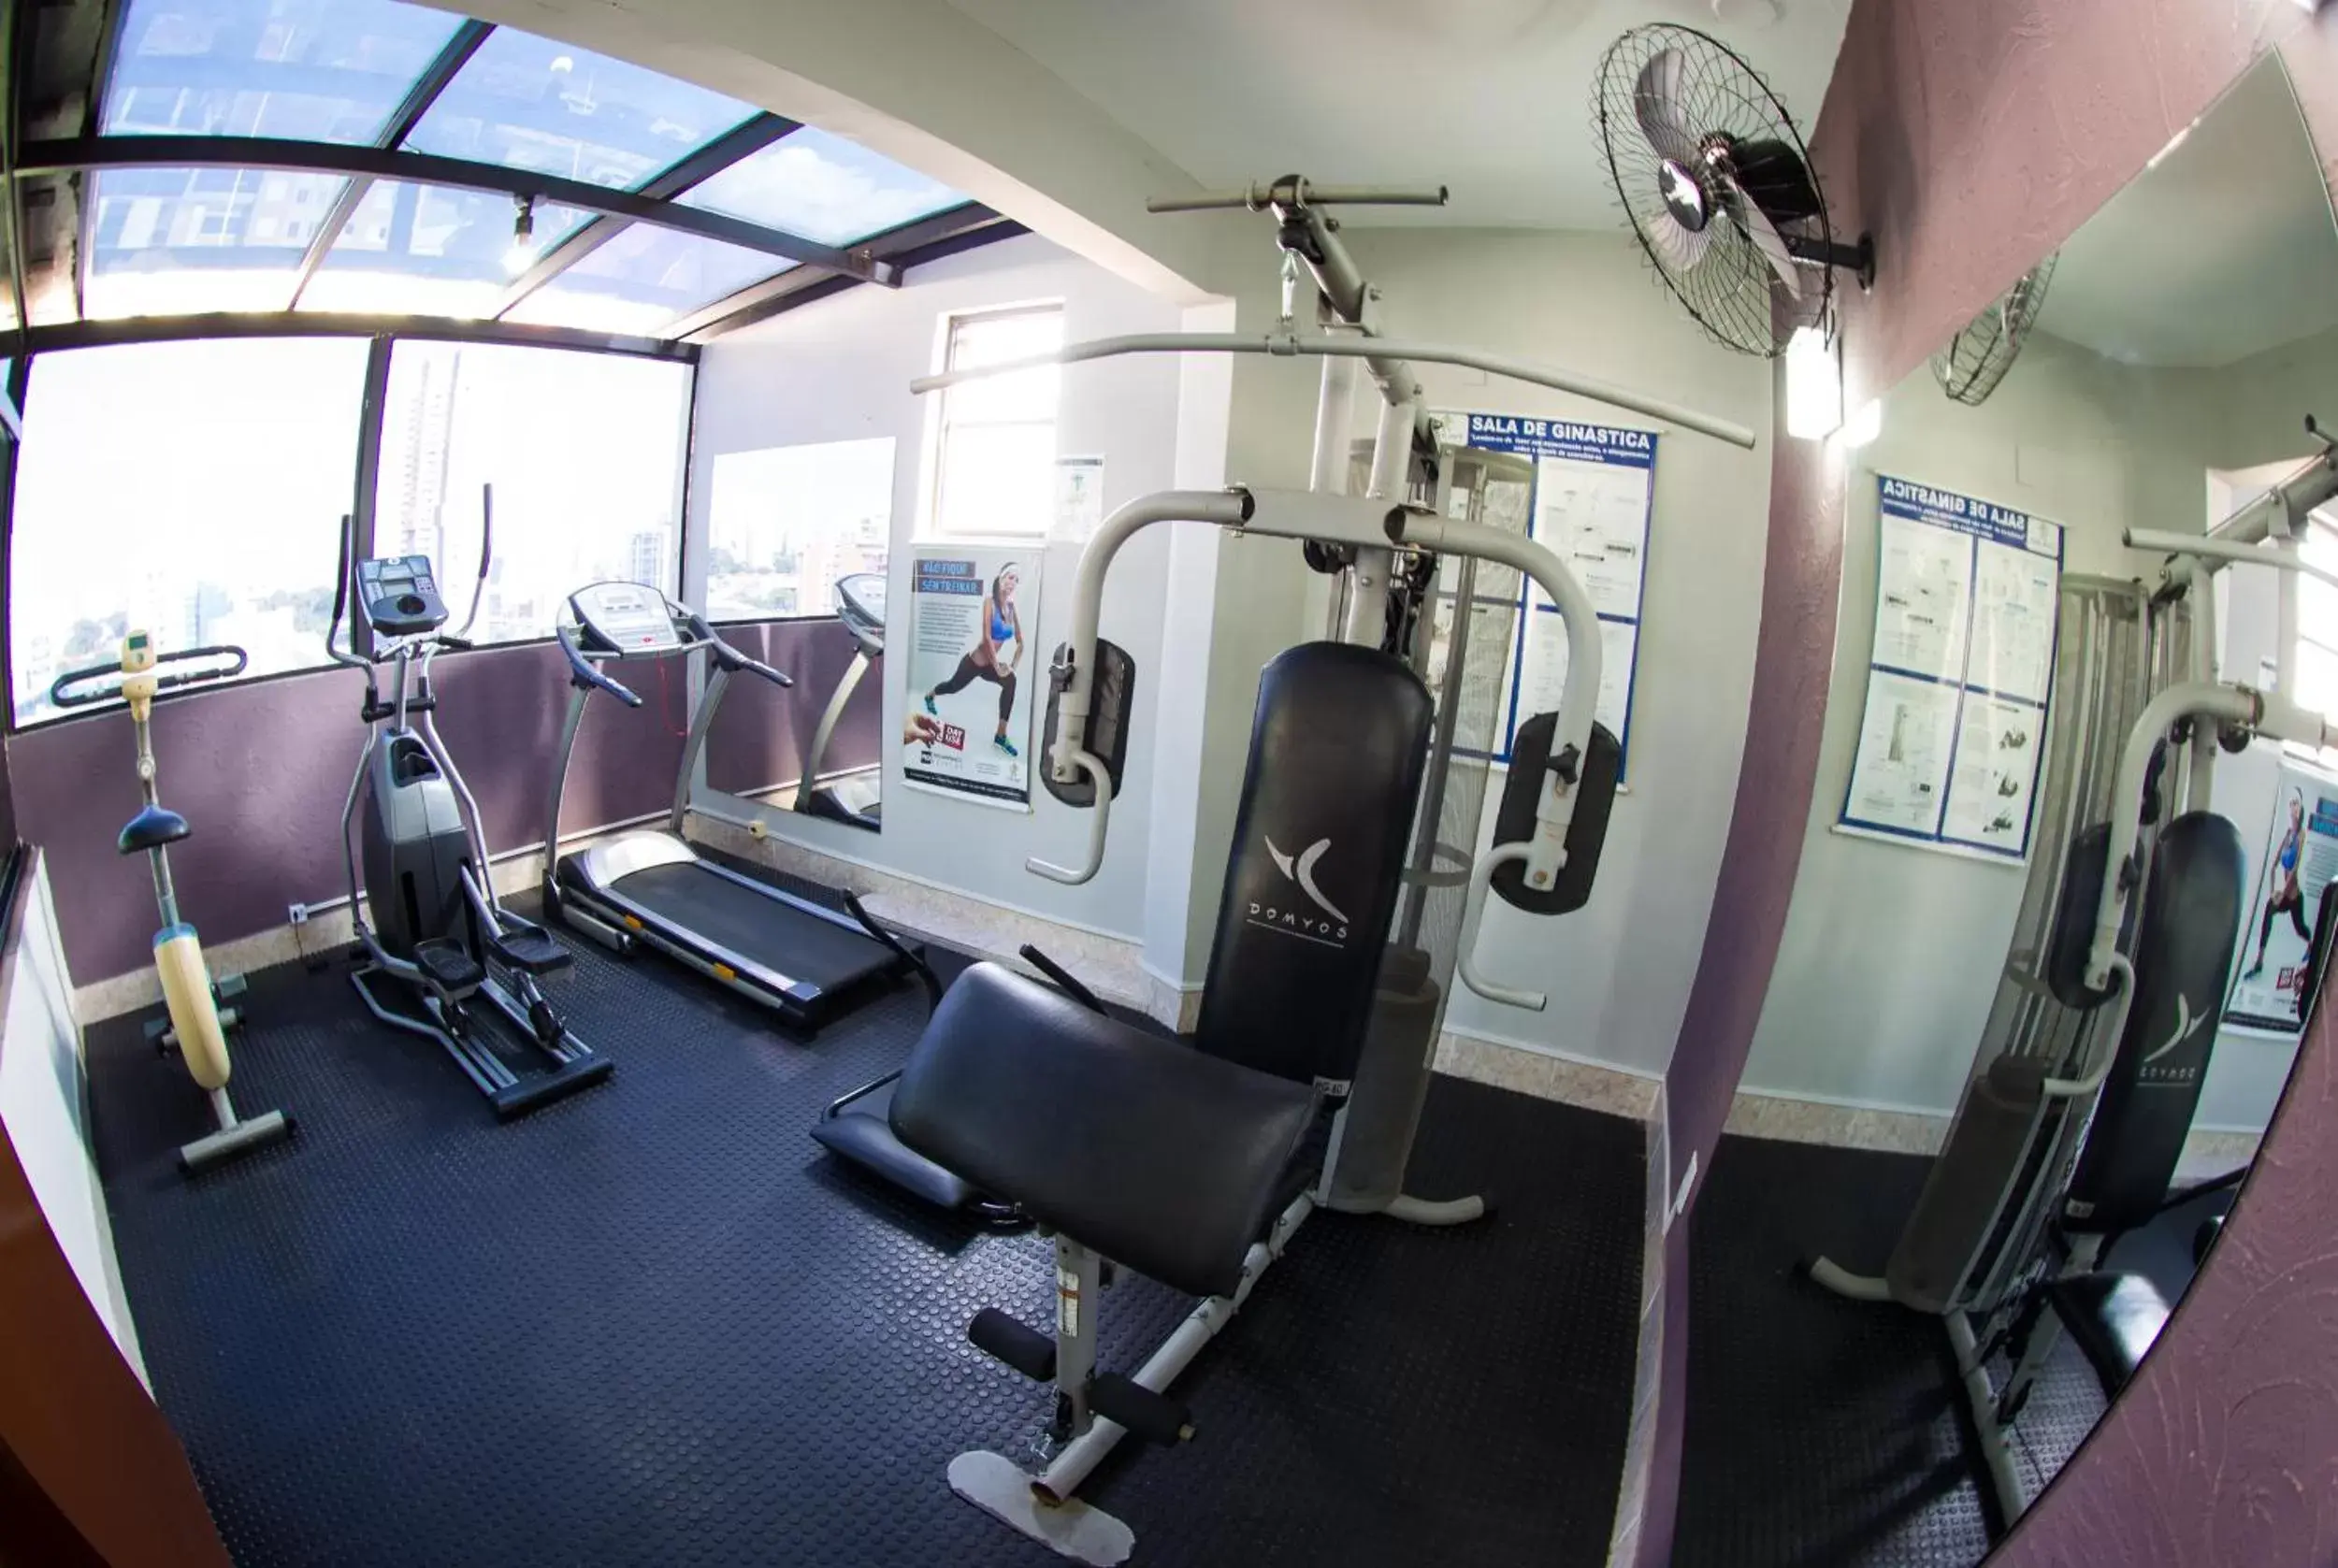 Fitness centre/facilities, Fitness Center/Facilities in LEON PARK HOTEL e CONVENÇÕES - Melhor Custo Benefício